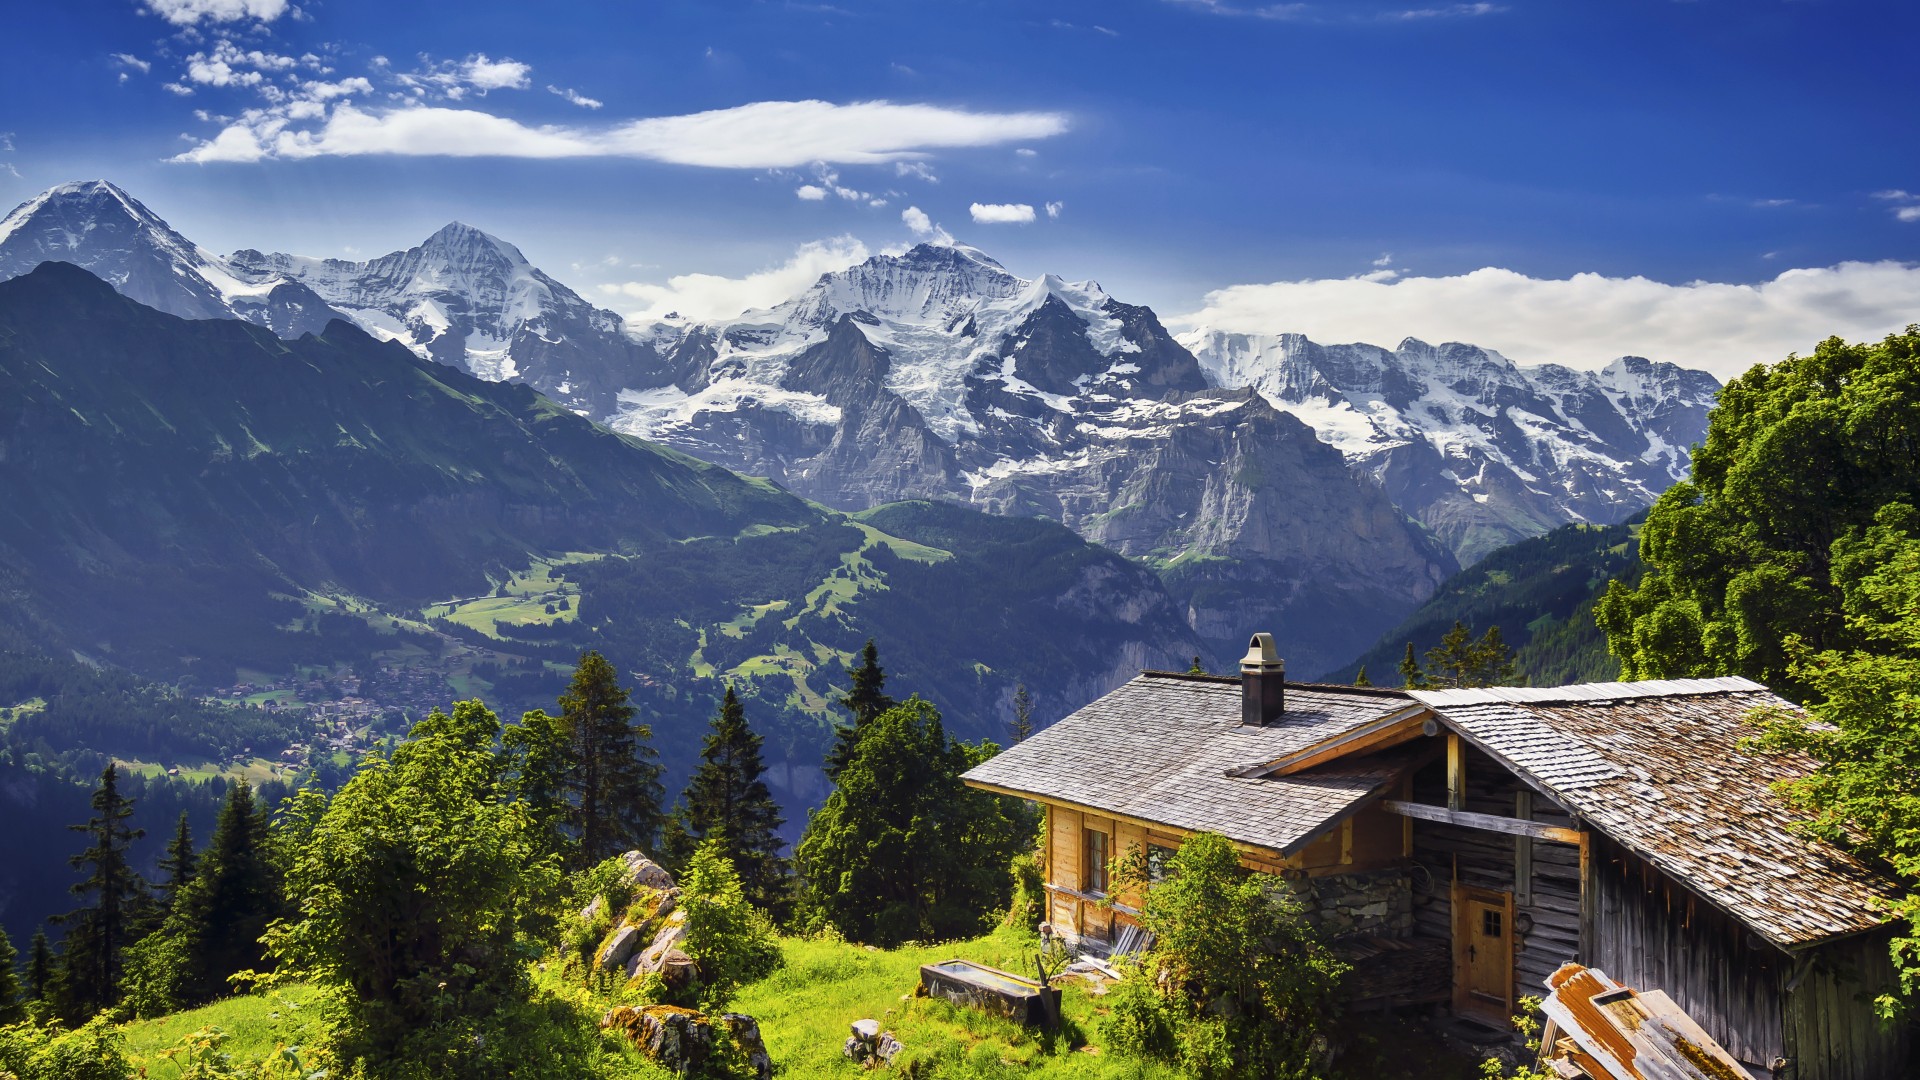 瑞士,山,冰川,悬崖,自然风景桌面壁纸